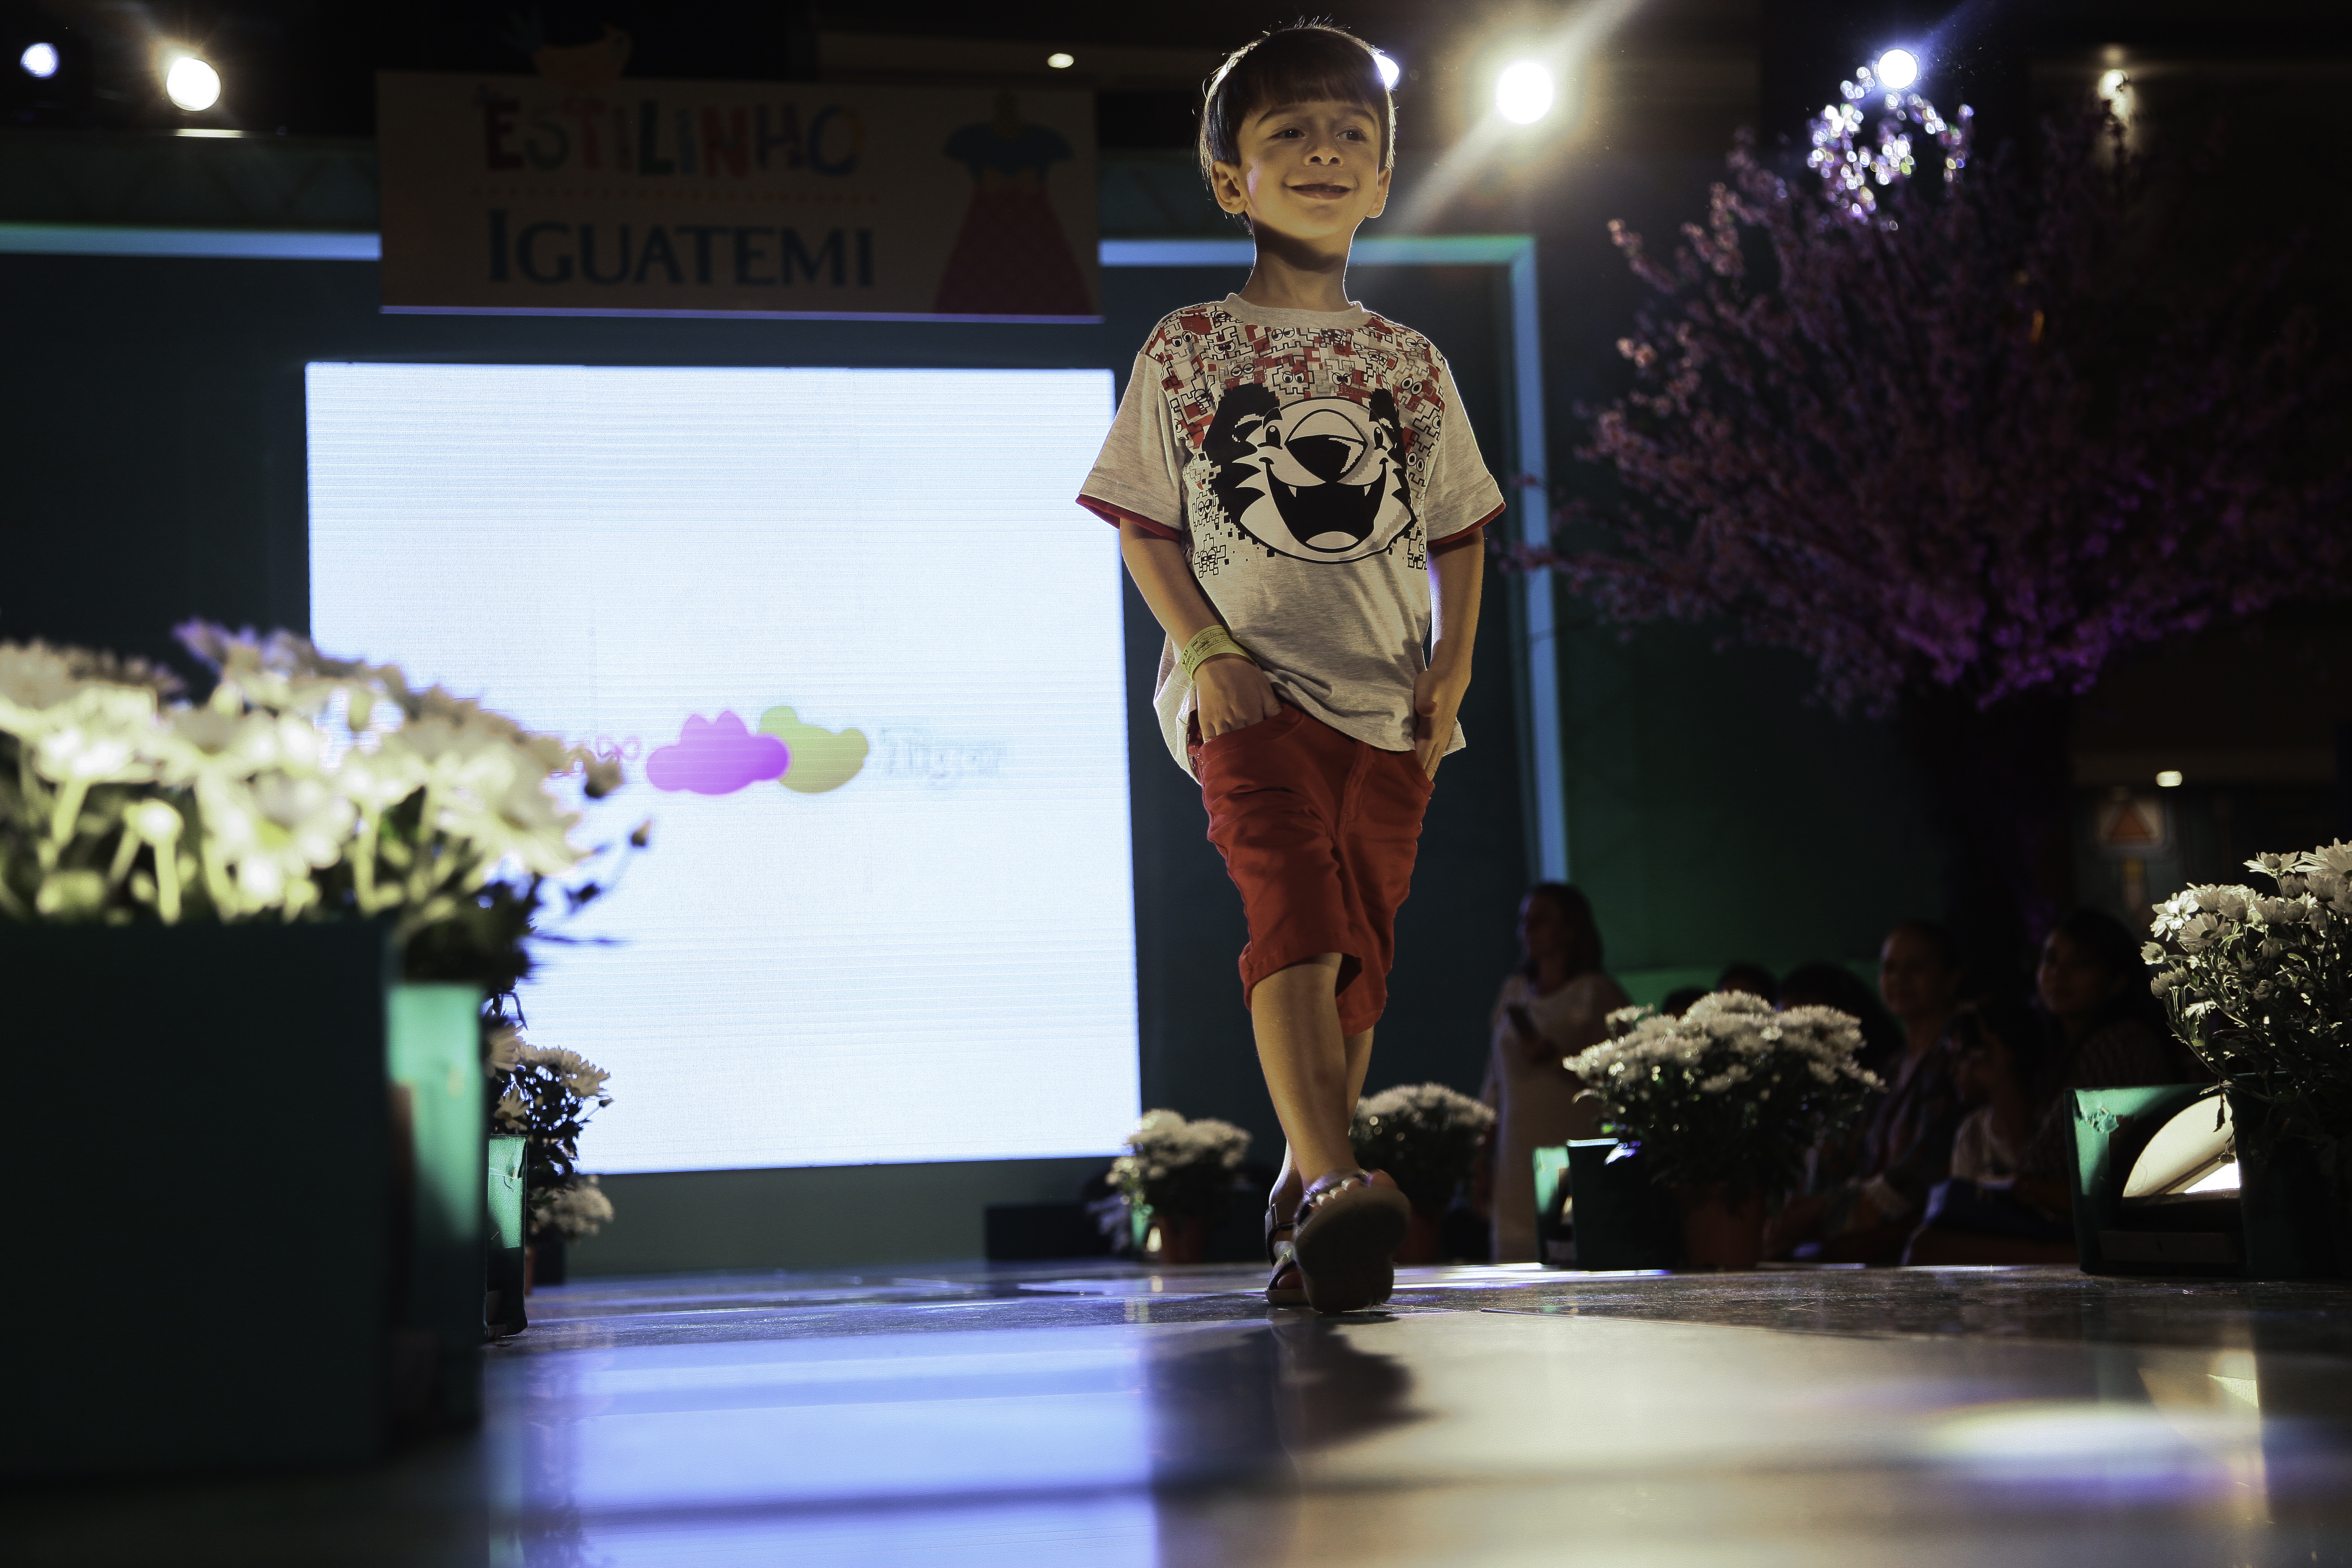 Estilinho Iguatemi chega a 4ª edição em parceria com 16 marcas de moda infantil